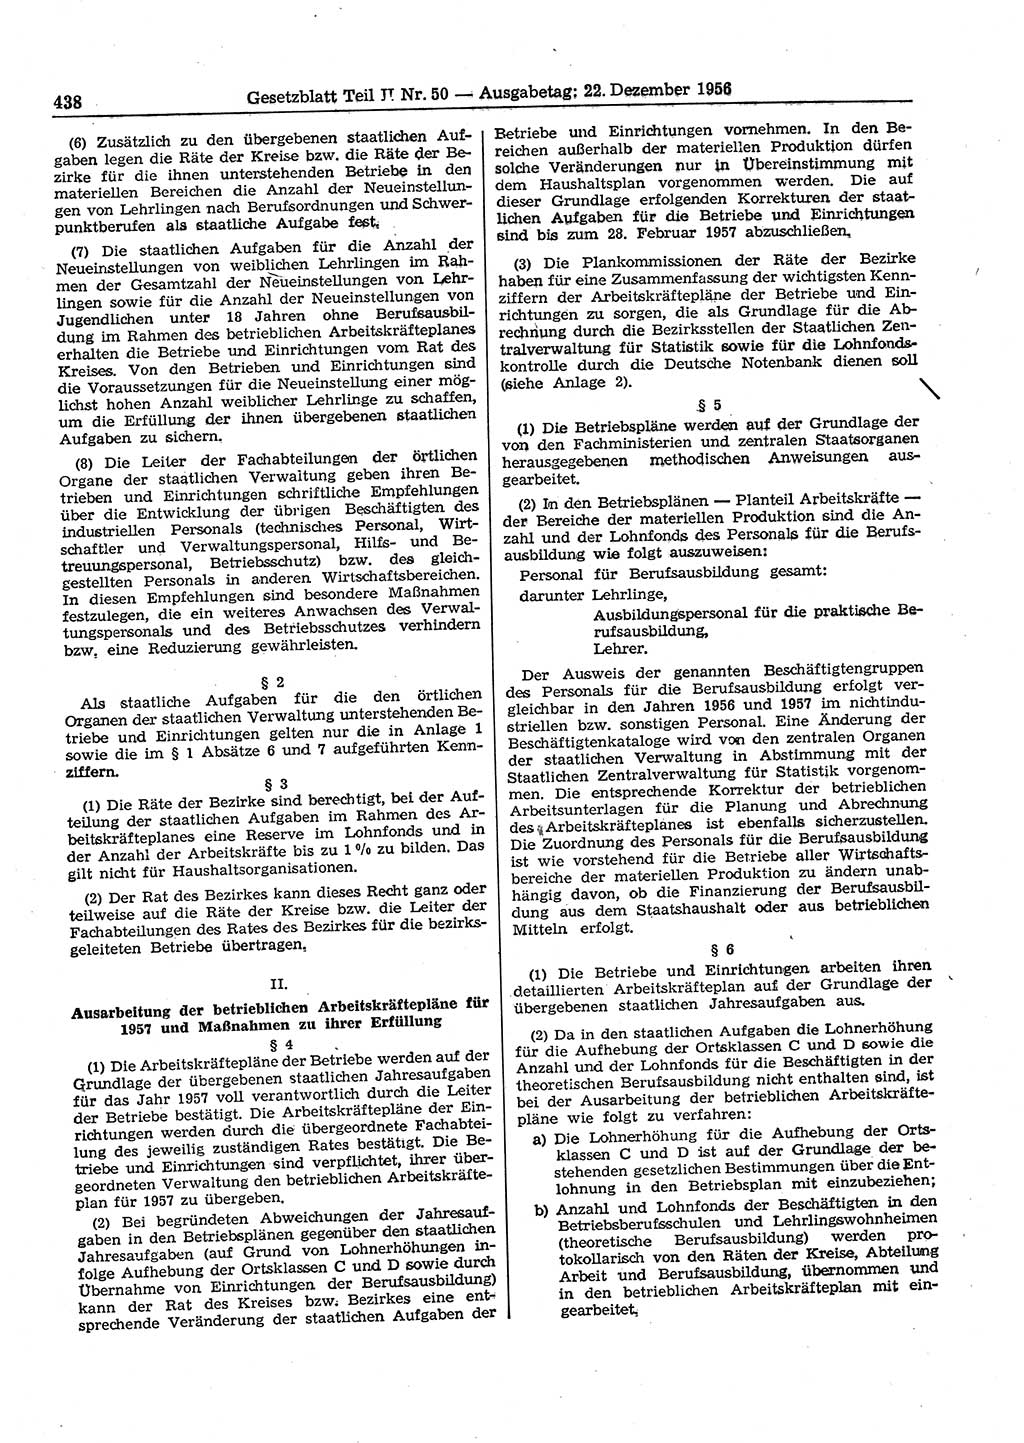 Gesetzblatt (GBl.) der Deutschen Demokratischen Republik (DDR) Teil ⅠⅠ 1956, Seite 438 (GBl. DDR ⅠⅠ 1956, S. 438)